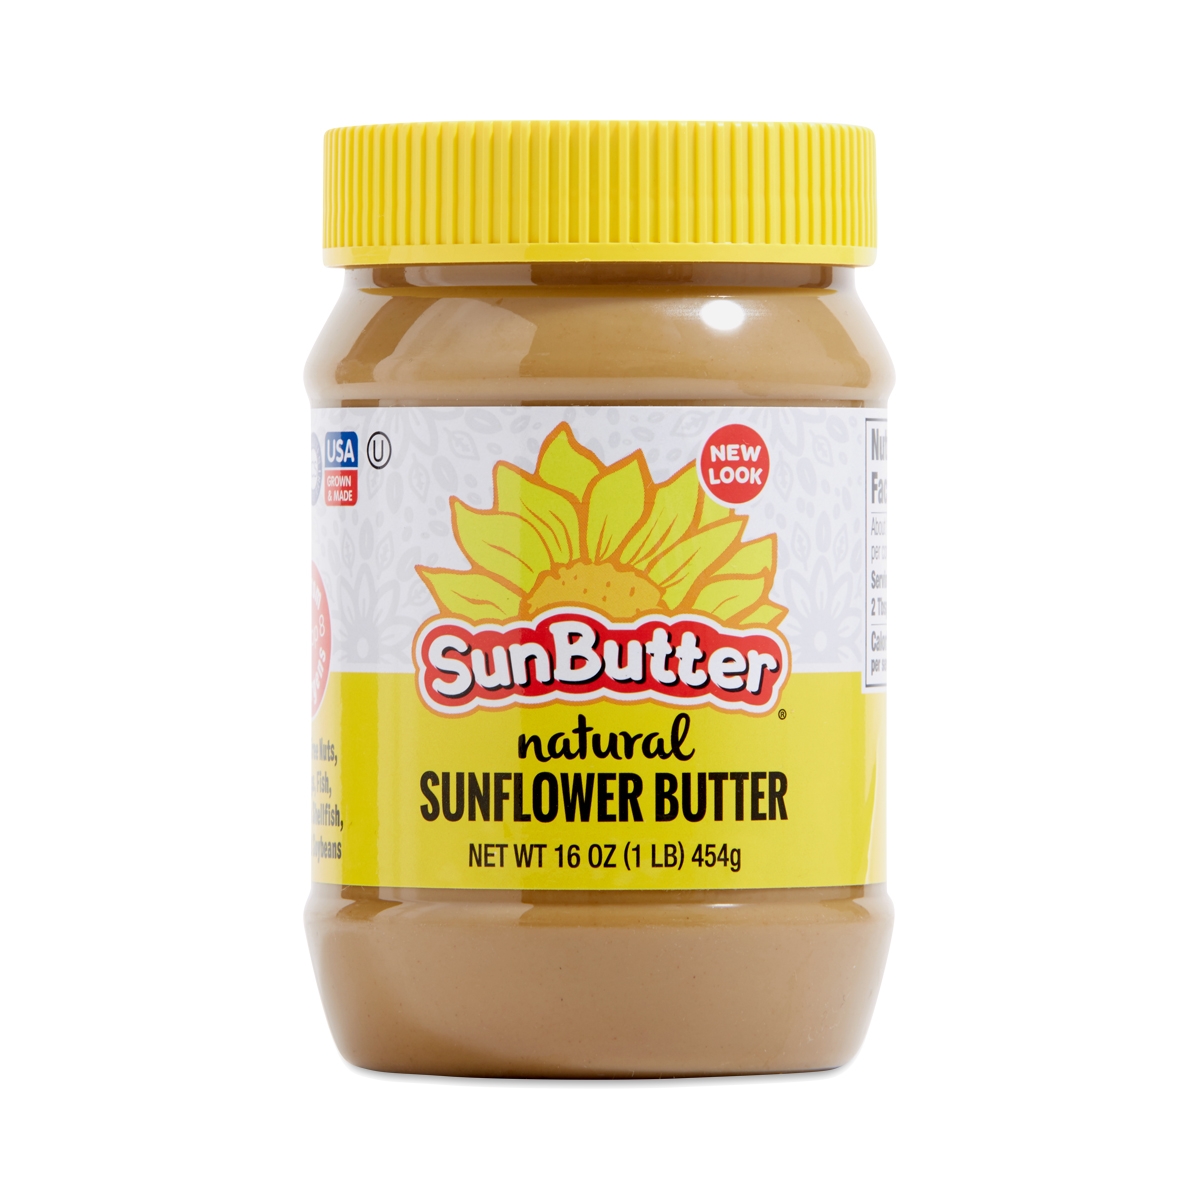 Sun Butter sunflower seed butter - peanut butter substitute